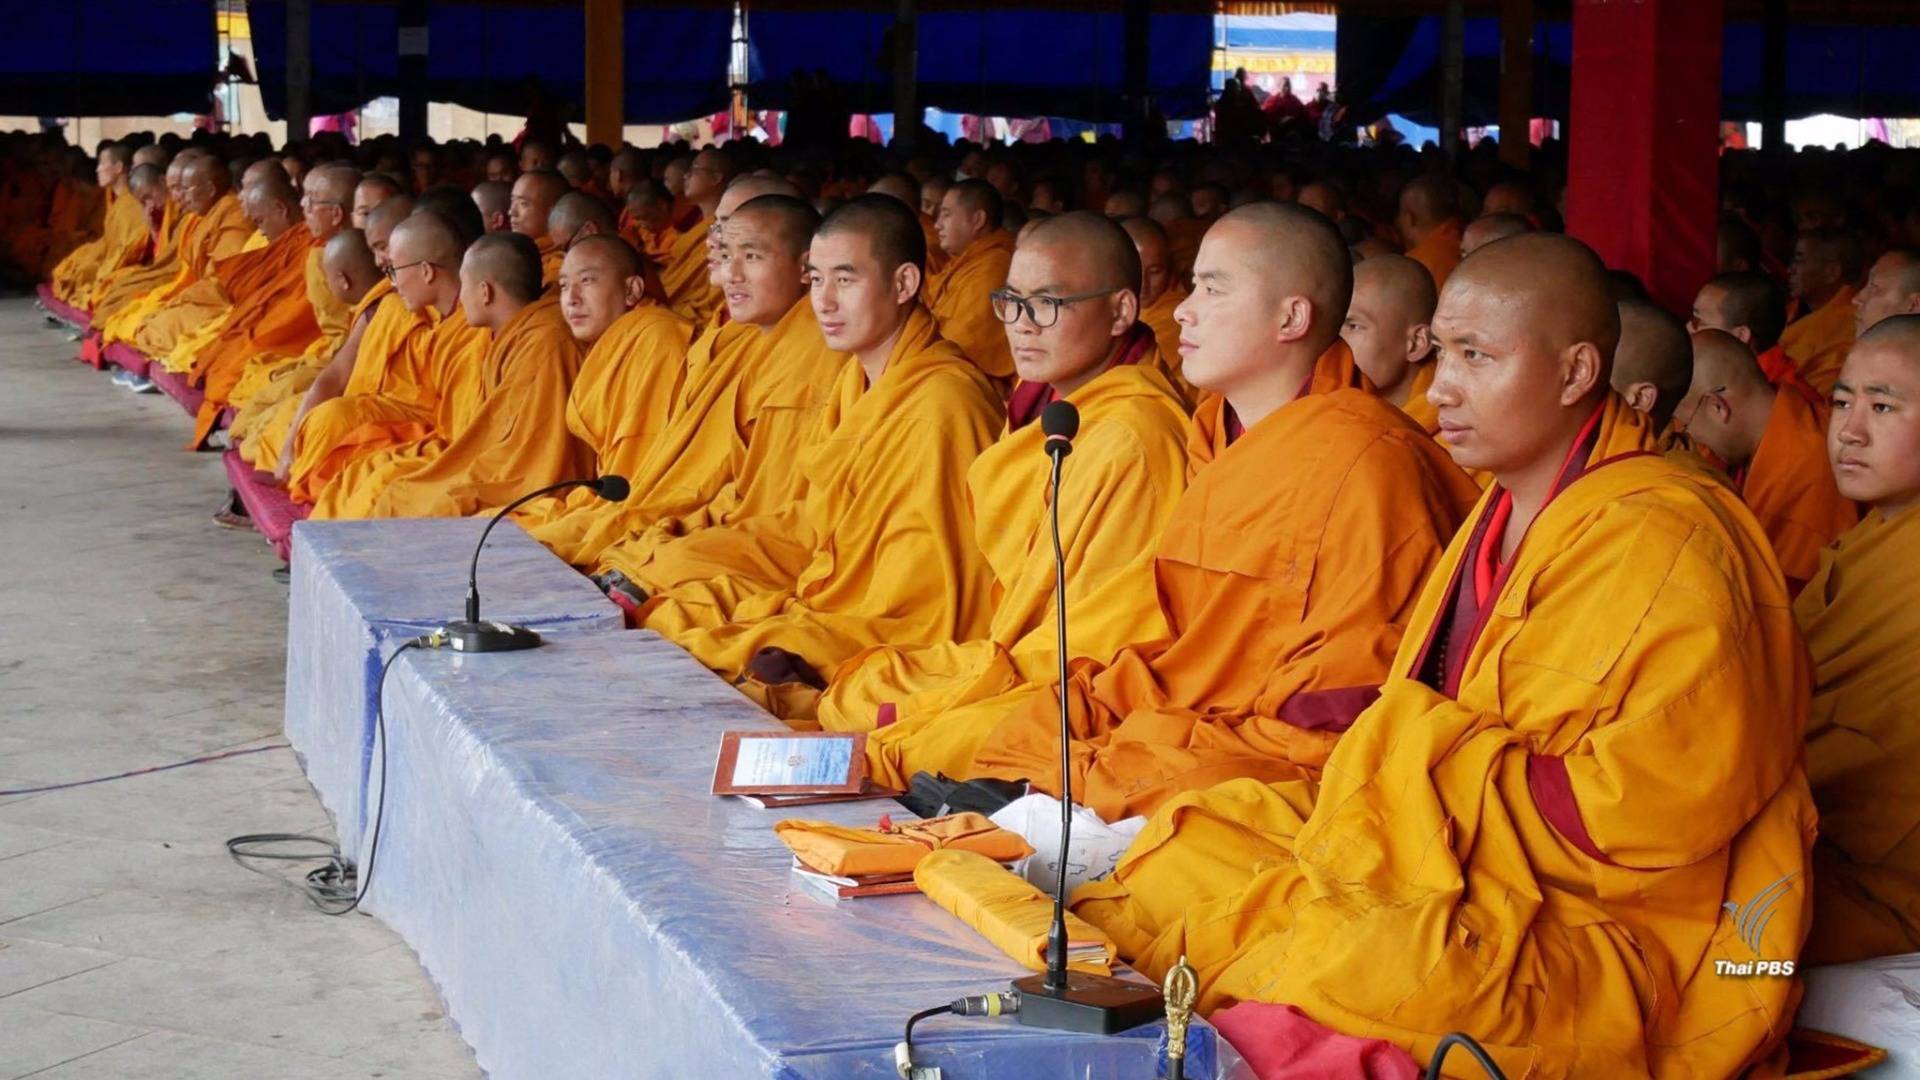 "ภูฏาน" จัดพิธีสวดมนต์ถวายเป็นพระราชกุศลฯ อย่างสมพระเกียรติ